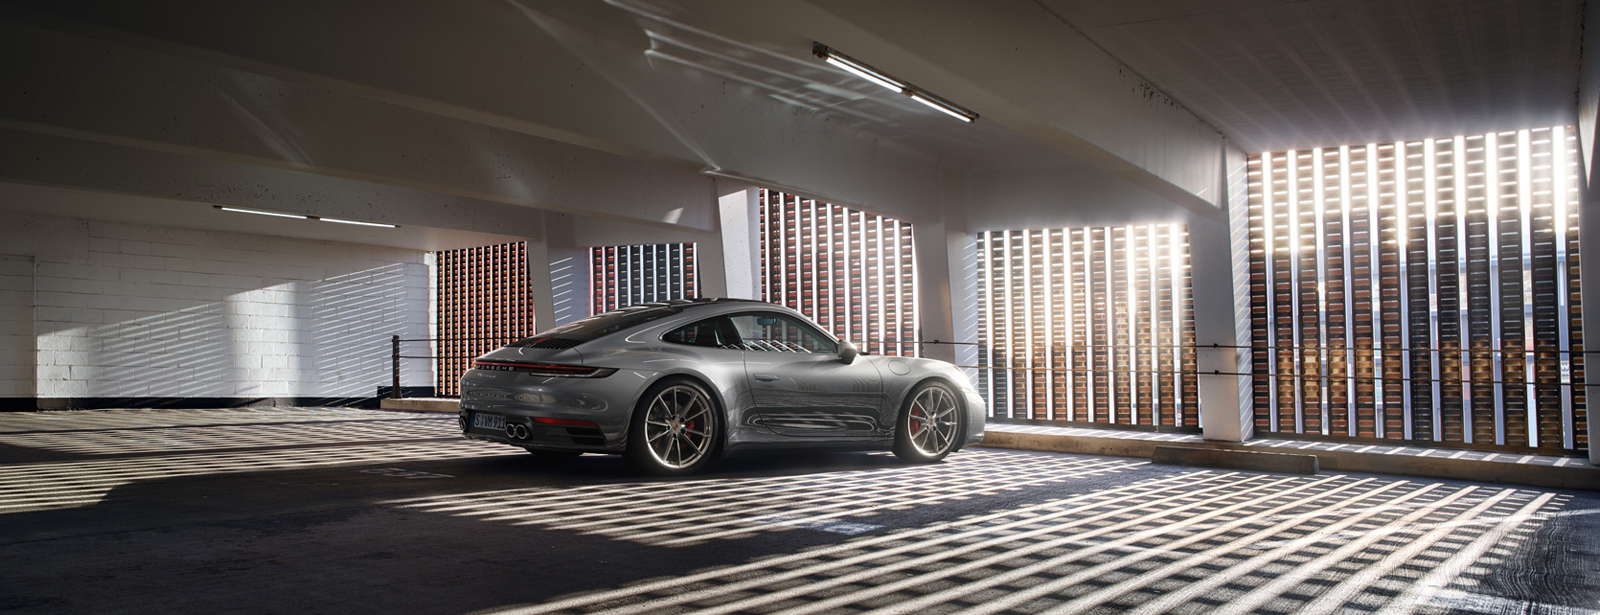 Обновленный Porsche Macan сделал ставку на мощность и салон